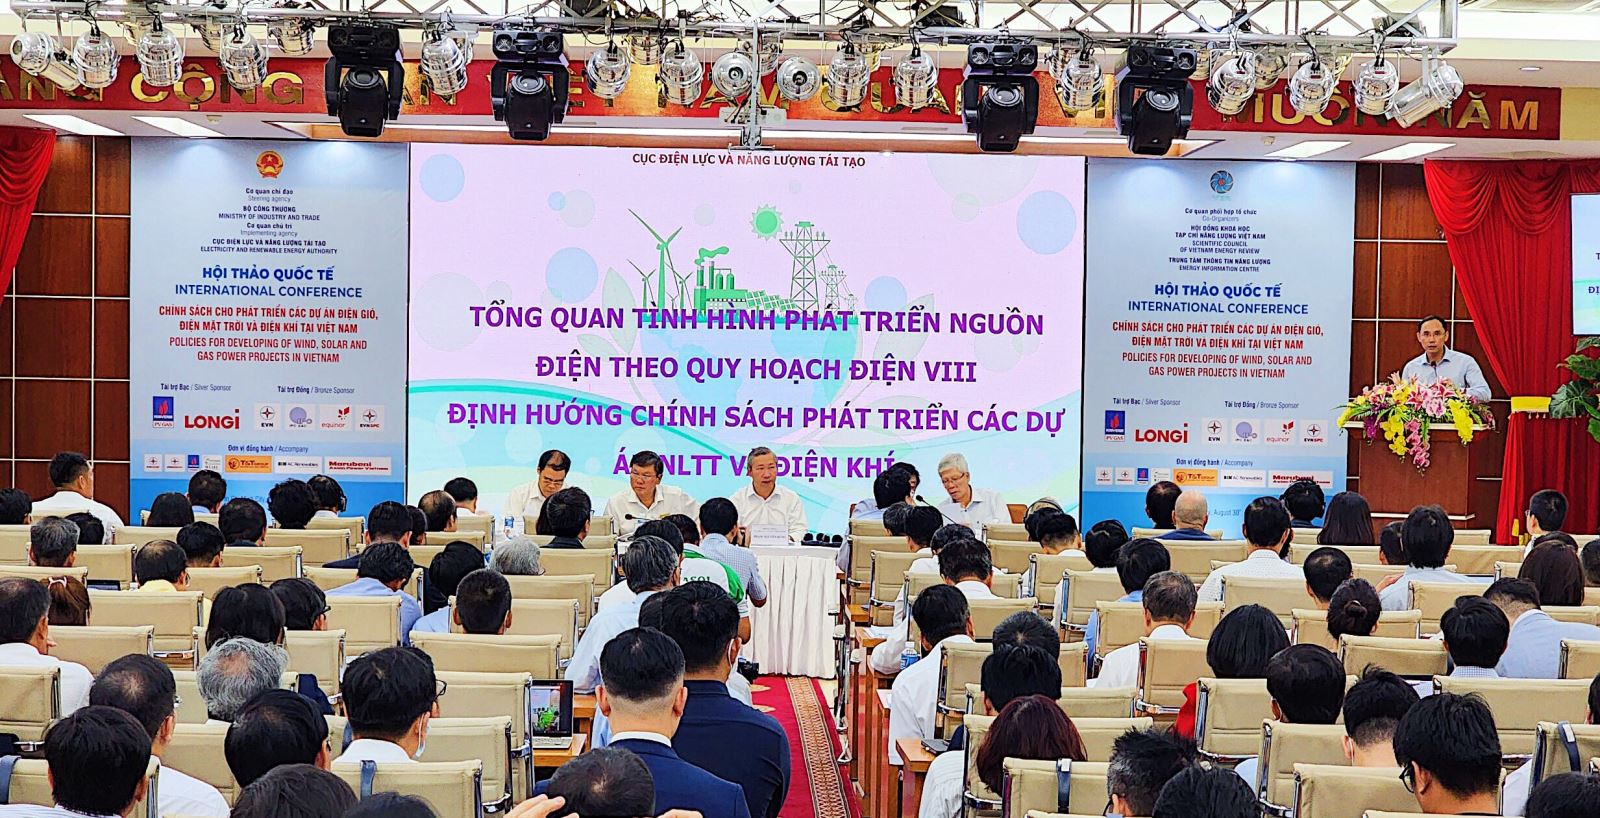 Hội thảo quốc tế về chính sách cho phát triển các dự án điện gió, điện mặt trời, điện khí tại Việt Nam.